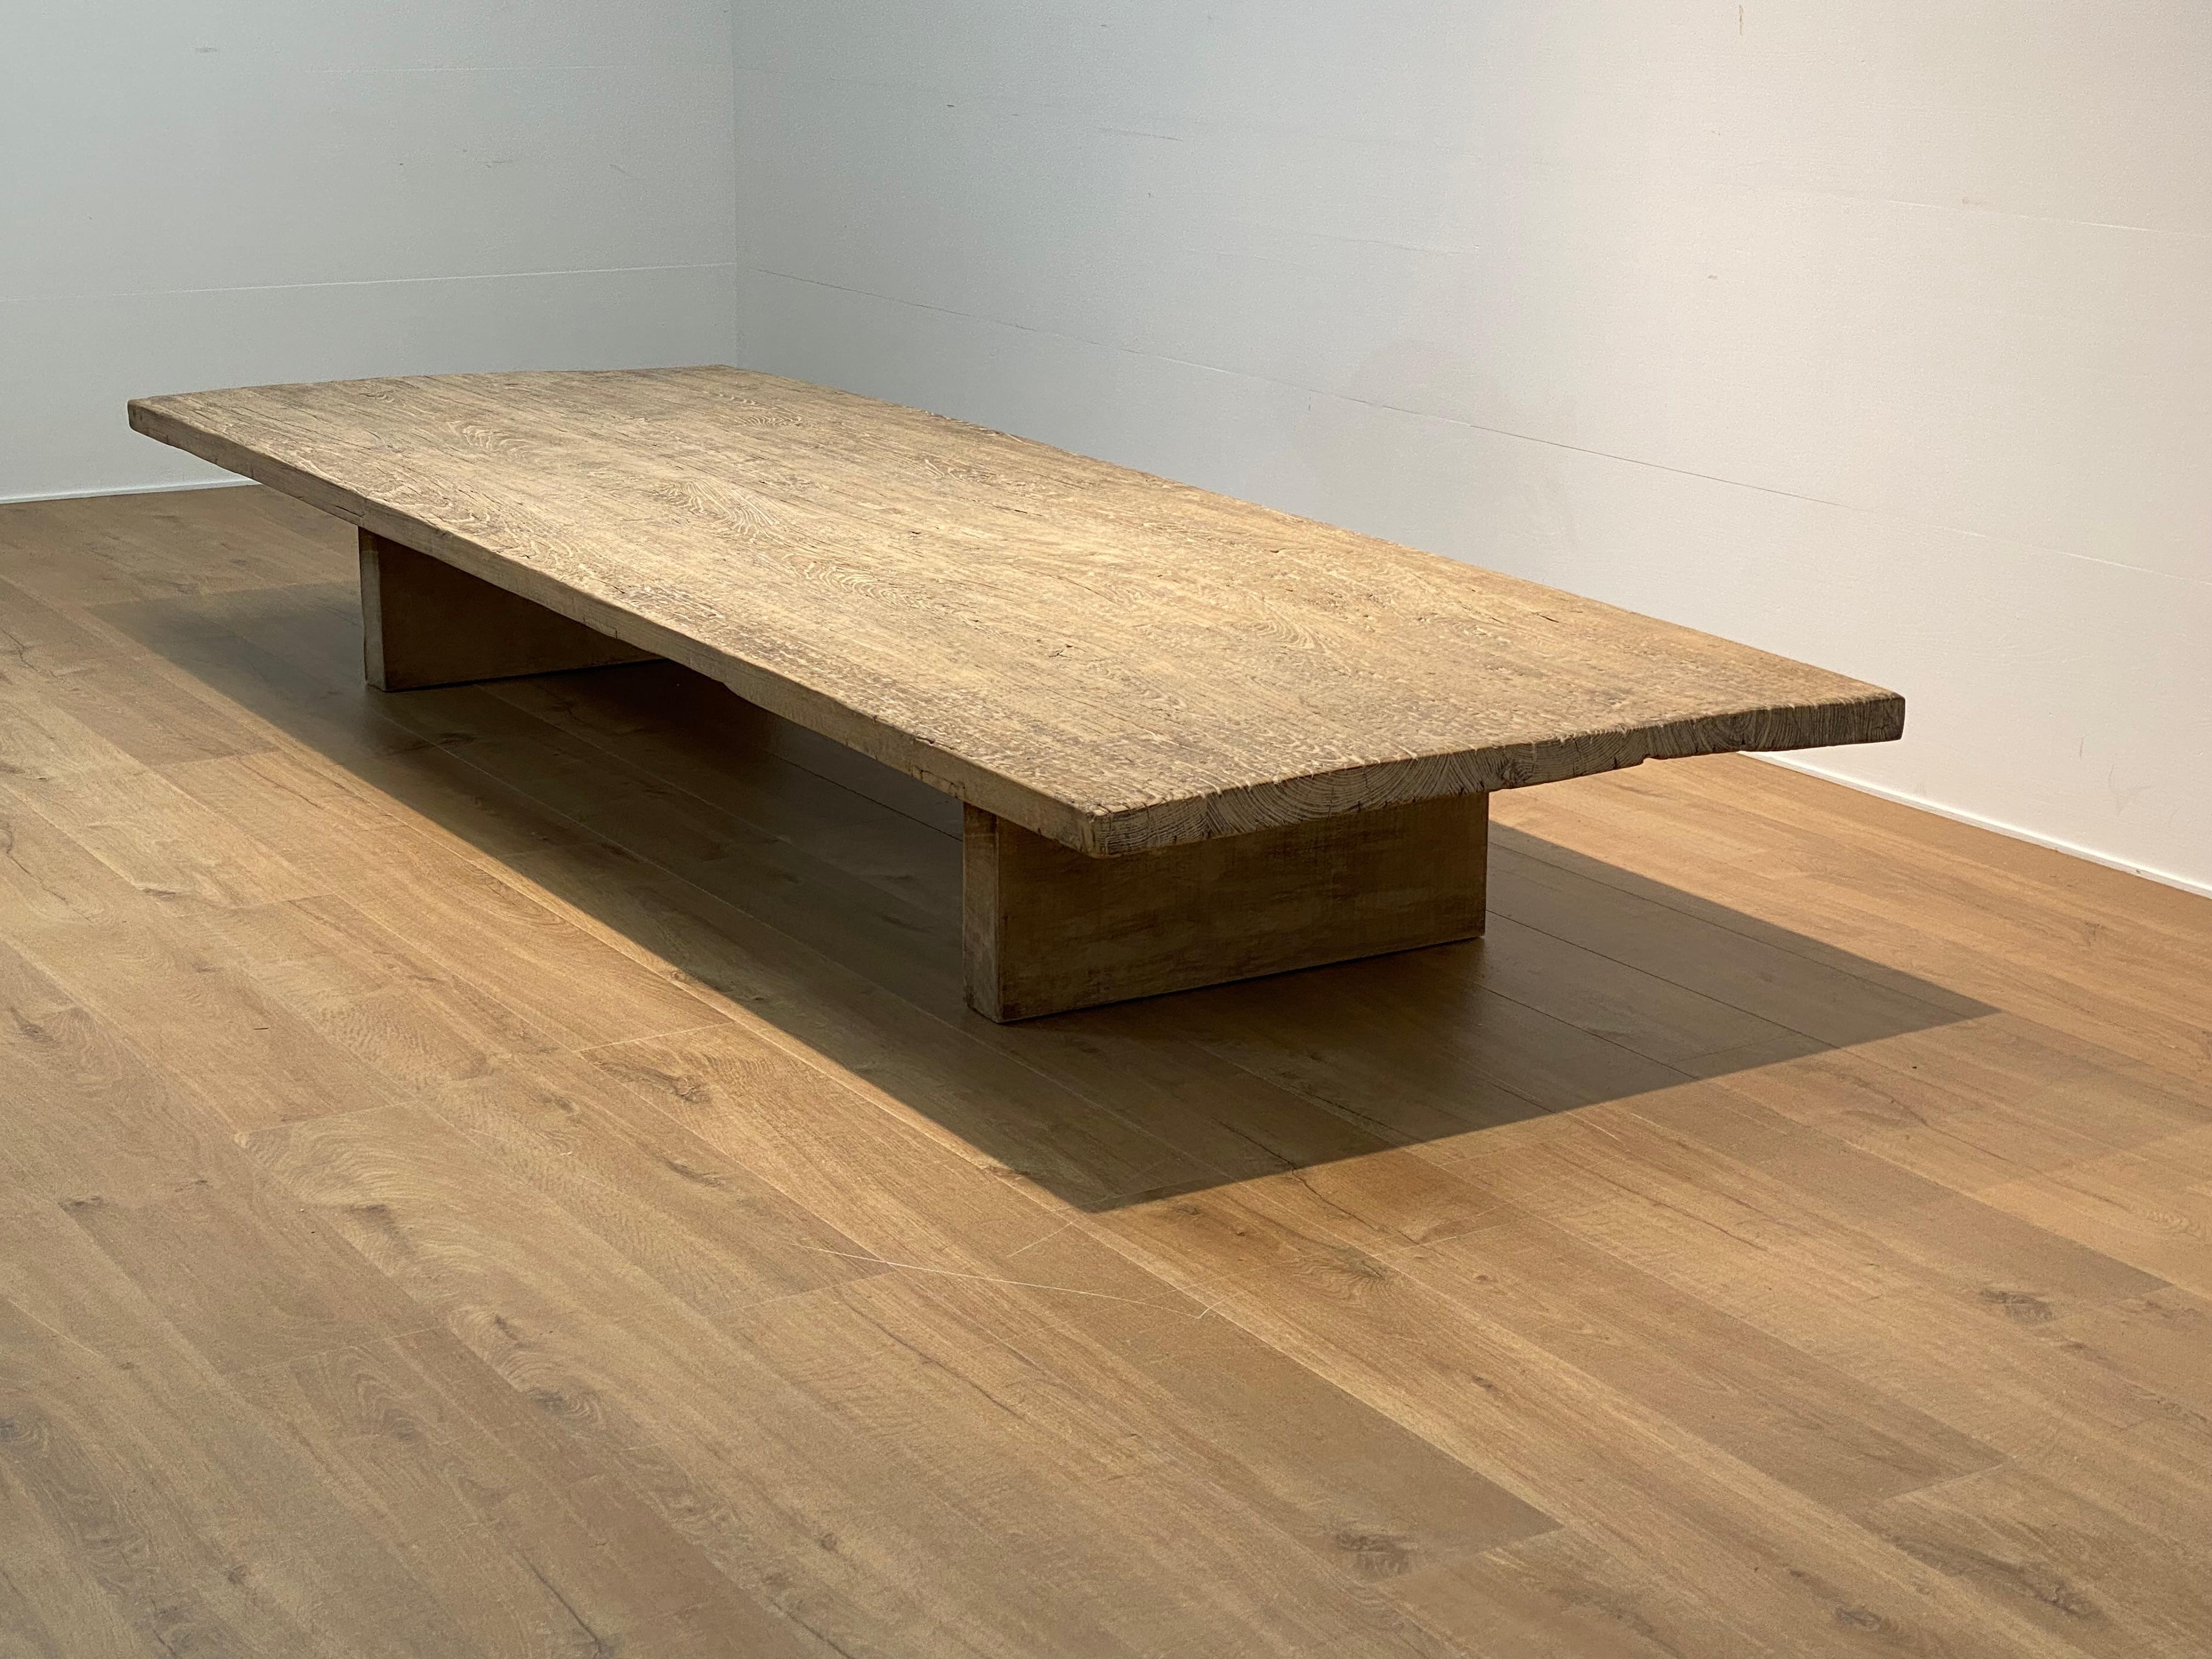 XXL-Brutalist  Tisch aus gebleichtem Elmwood,
Die Tischplatte steht auf einem modernen Holzsockel,
großer Glanz und Patina des gebleichten Holzes,
die Tischplatte weist Anzeichen alter Restaurierungen auf,
sehr leistungsfähiges Möbelstück